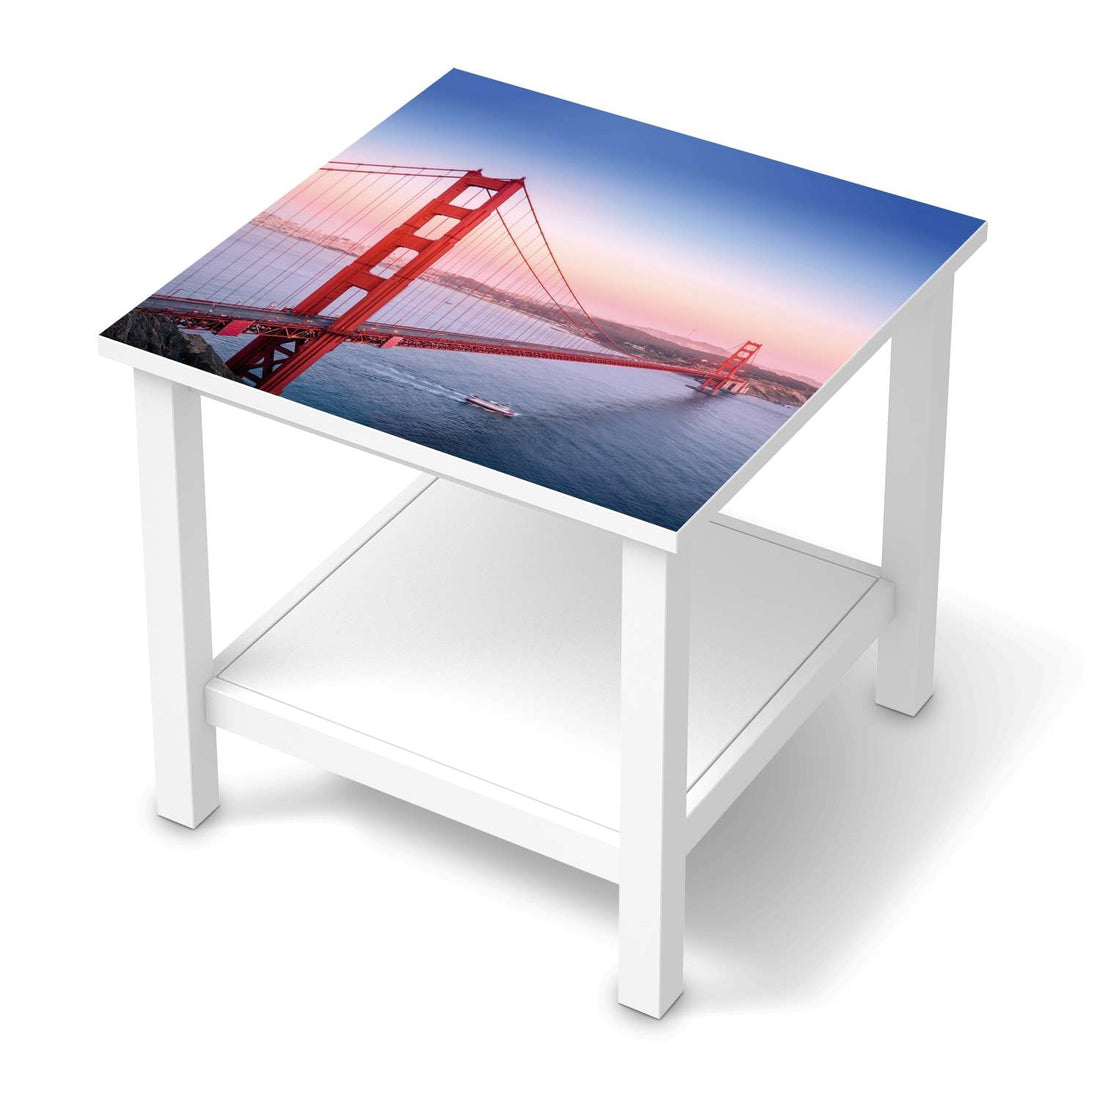 Möbel Klebefolie Golden Gate - IKEA Hemnes Beistelltisch 55x55 cm  - weiss